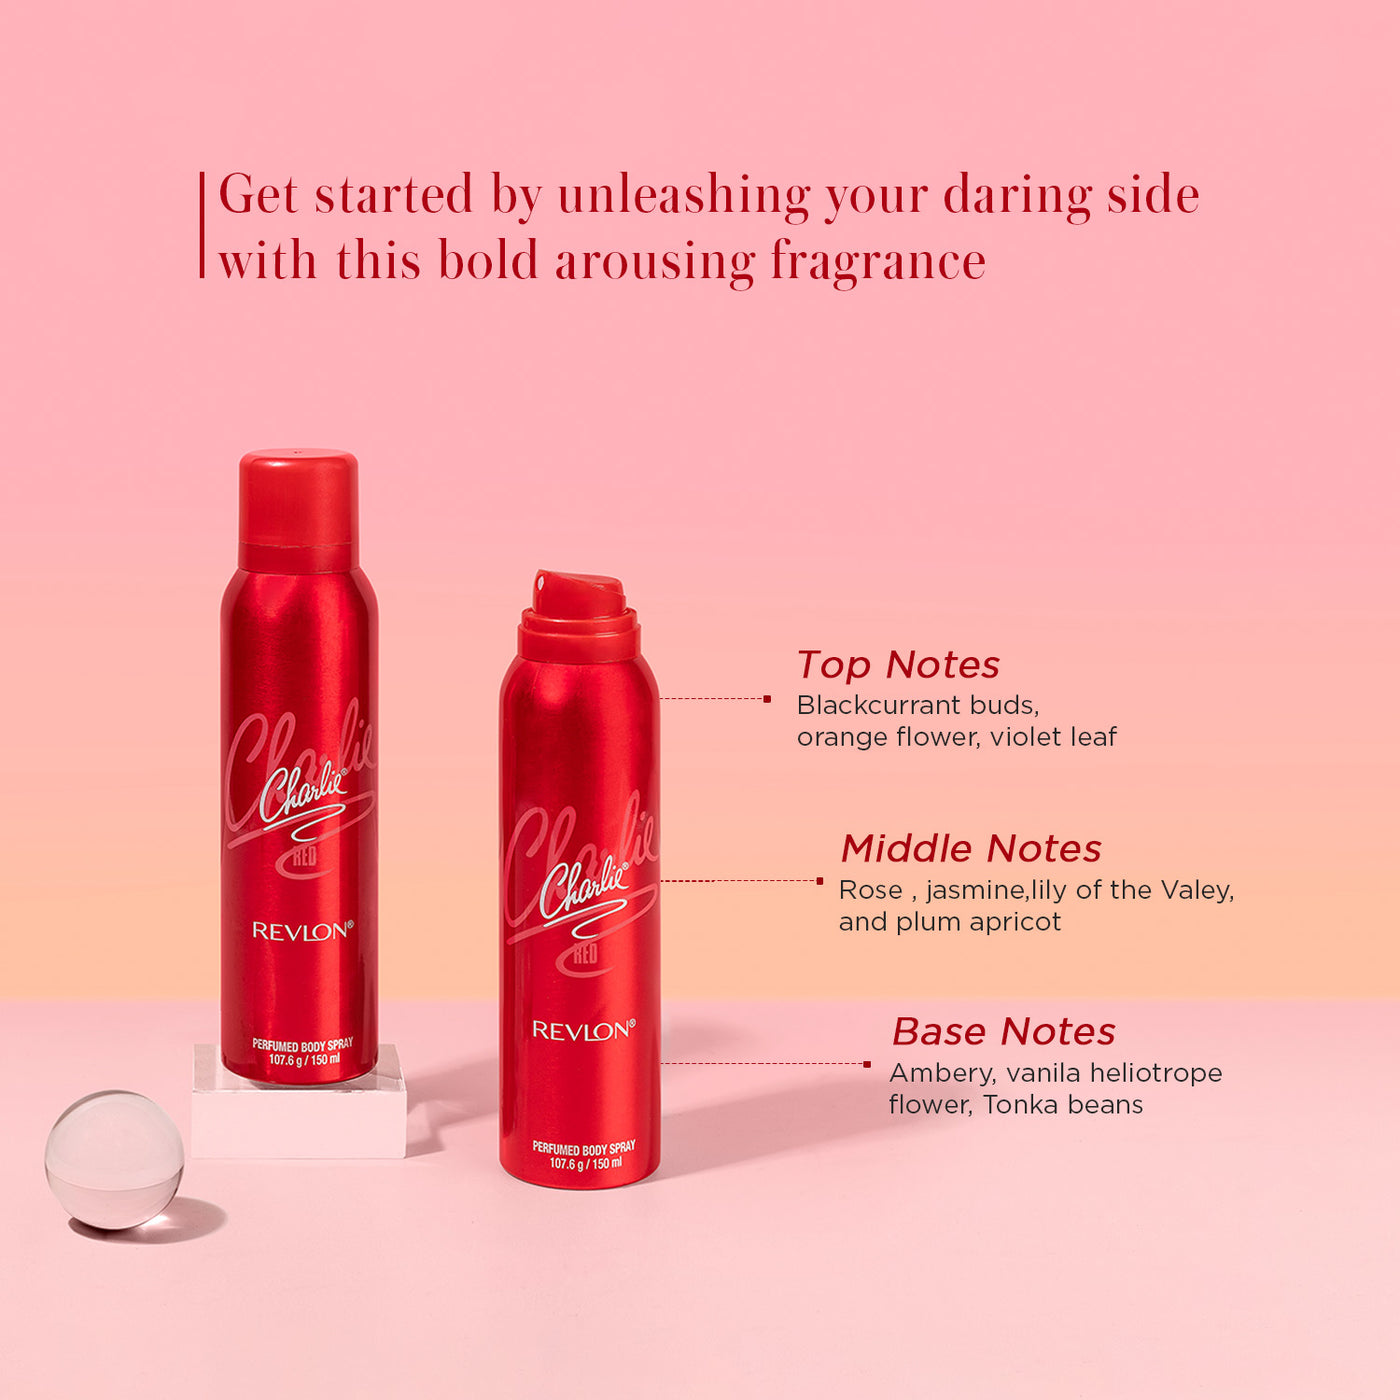 Charlie® Red Perfumed Body Spray